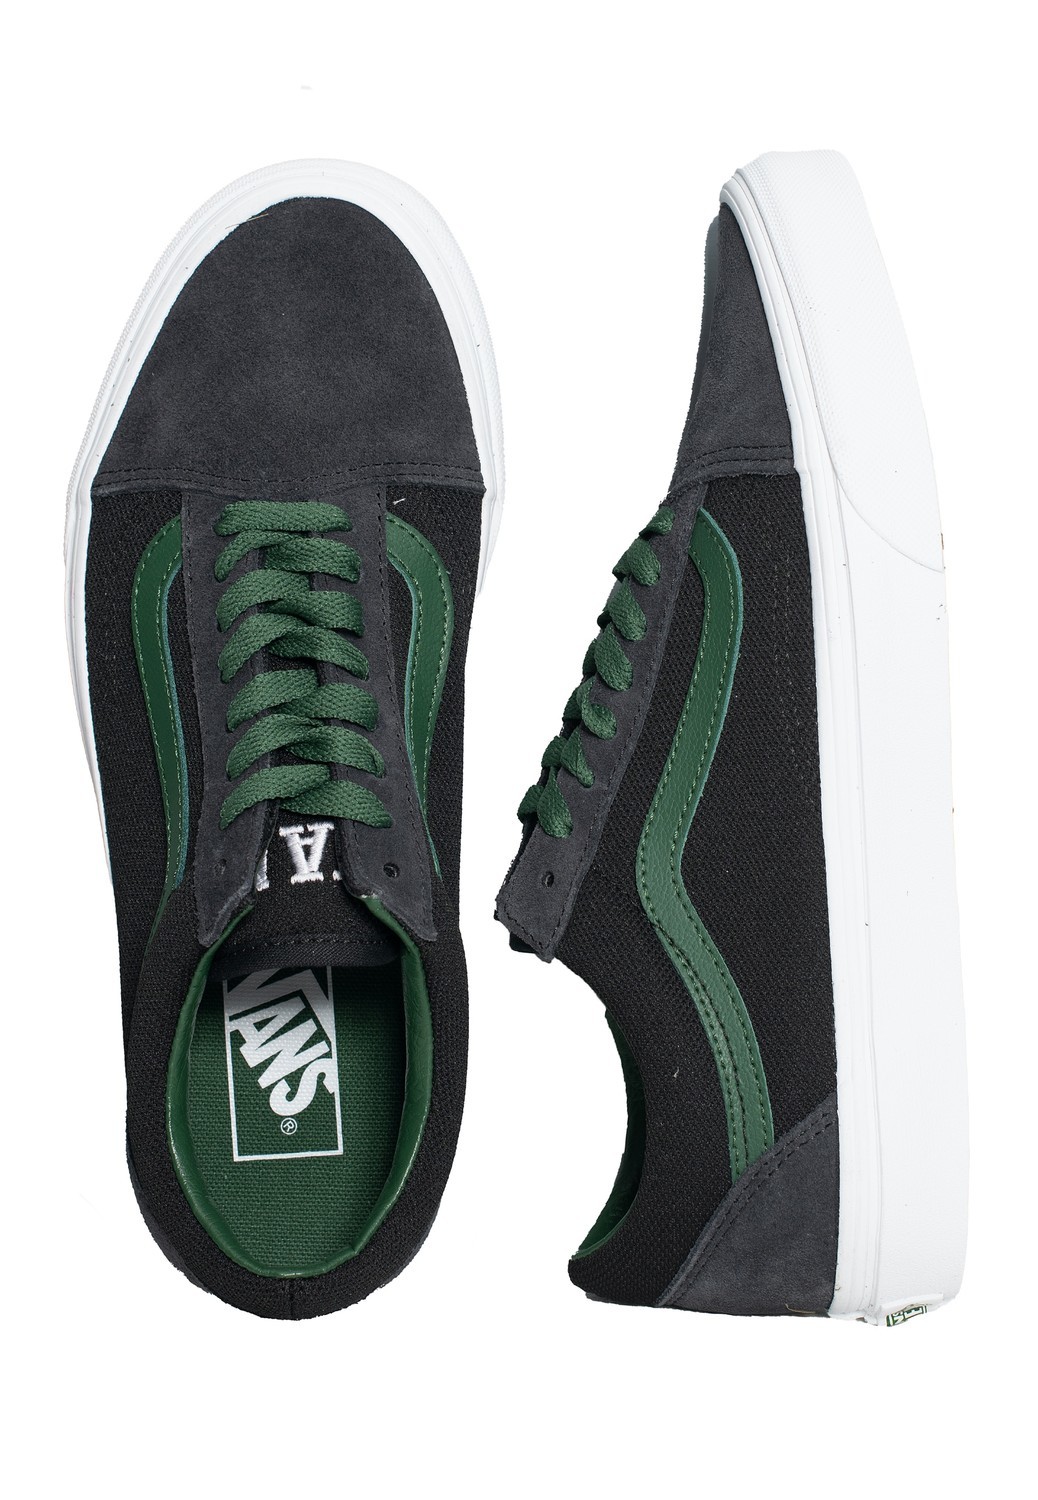 Vans - Old Skool Vans Club Stone/Green - Skate Shoes